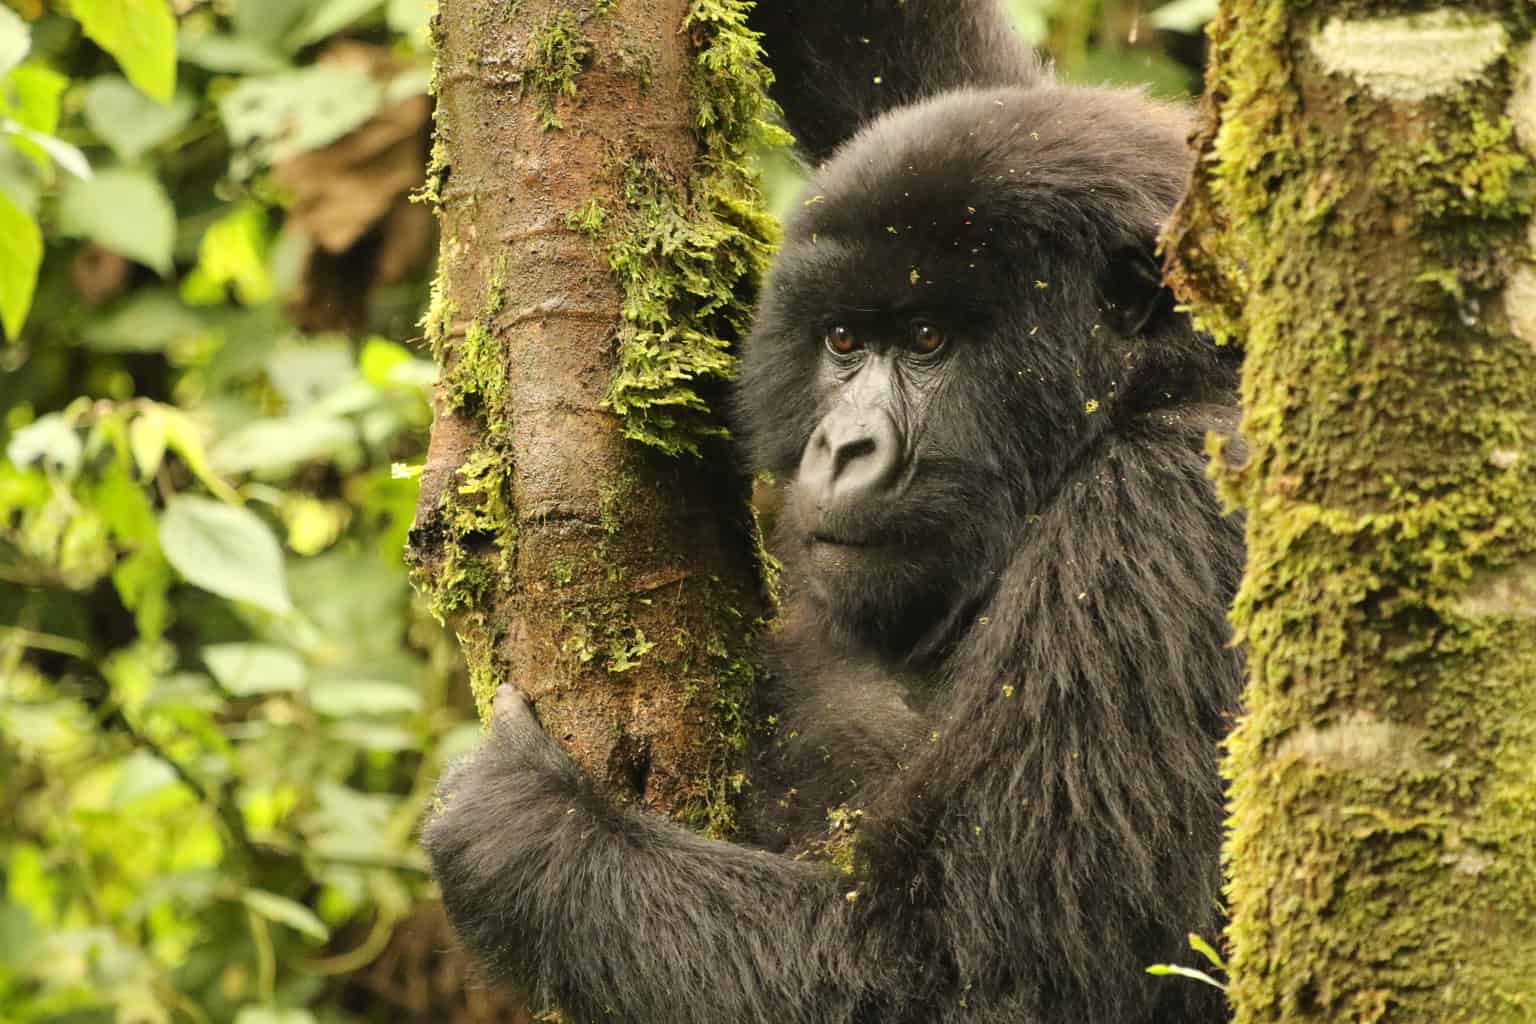 Trekking to See Gorillas in Rwanda